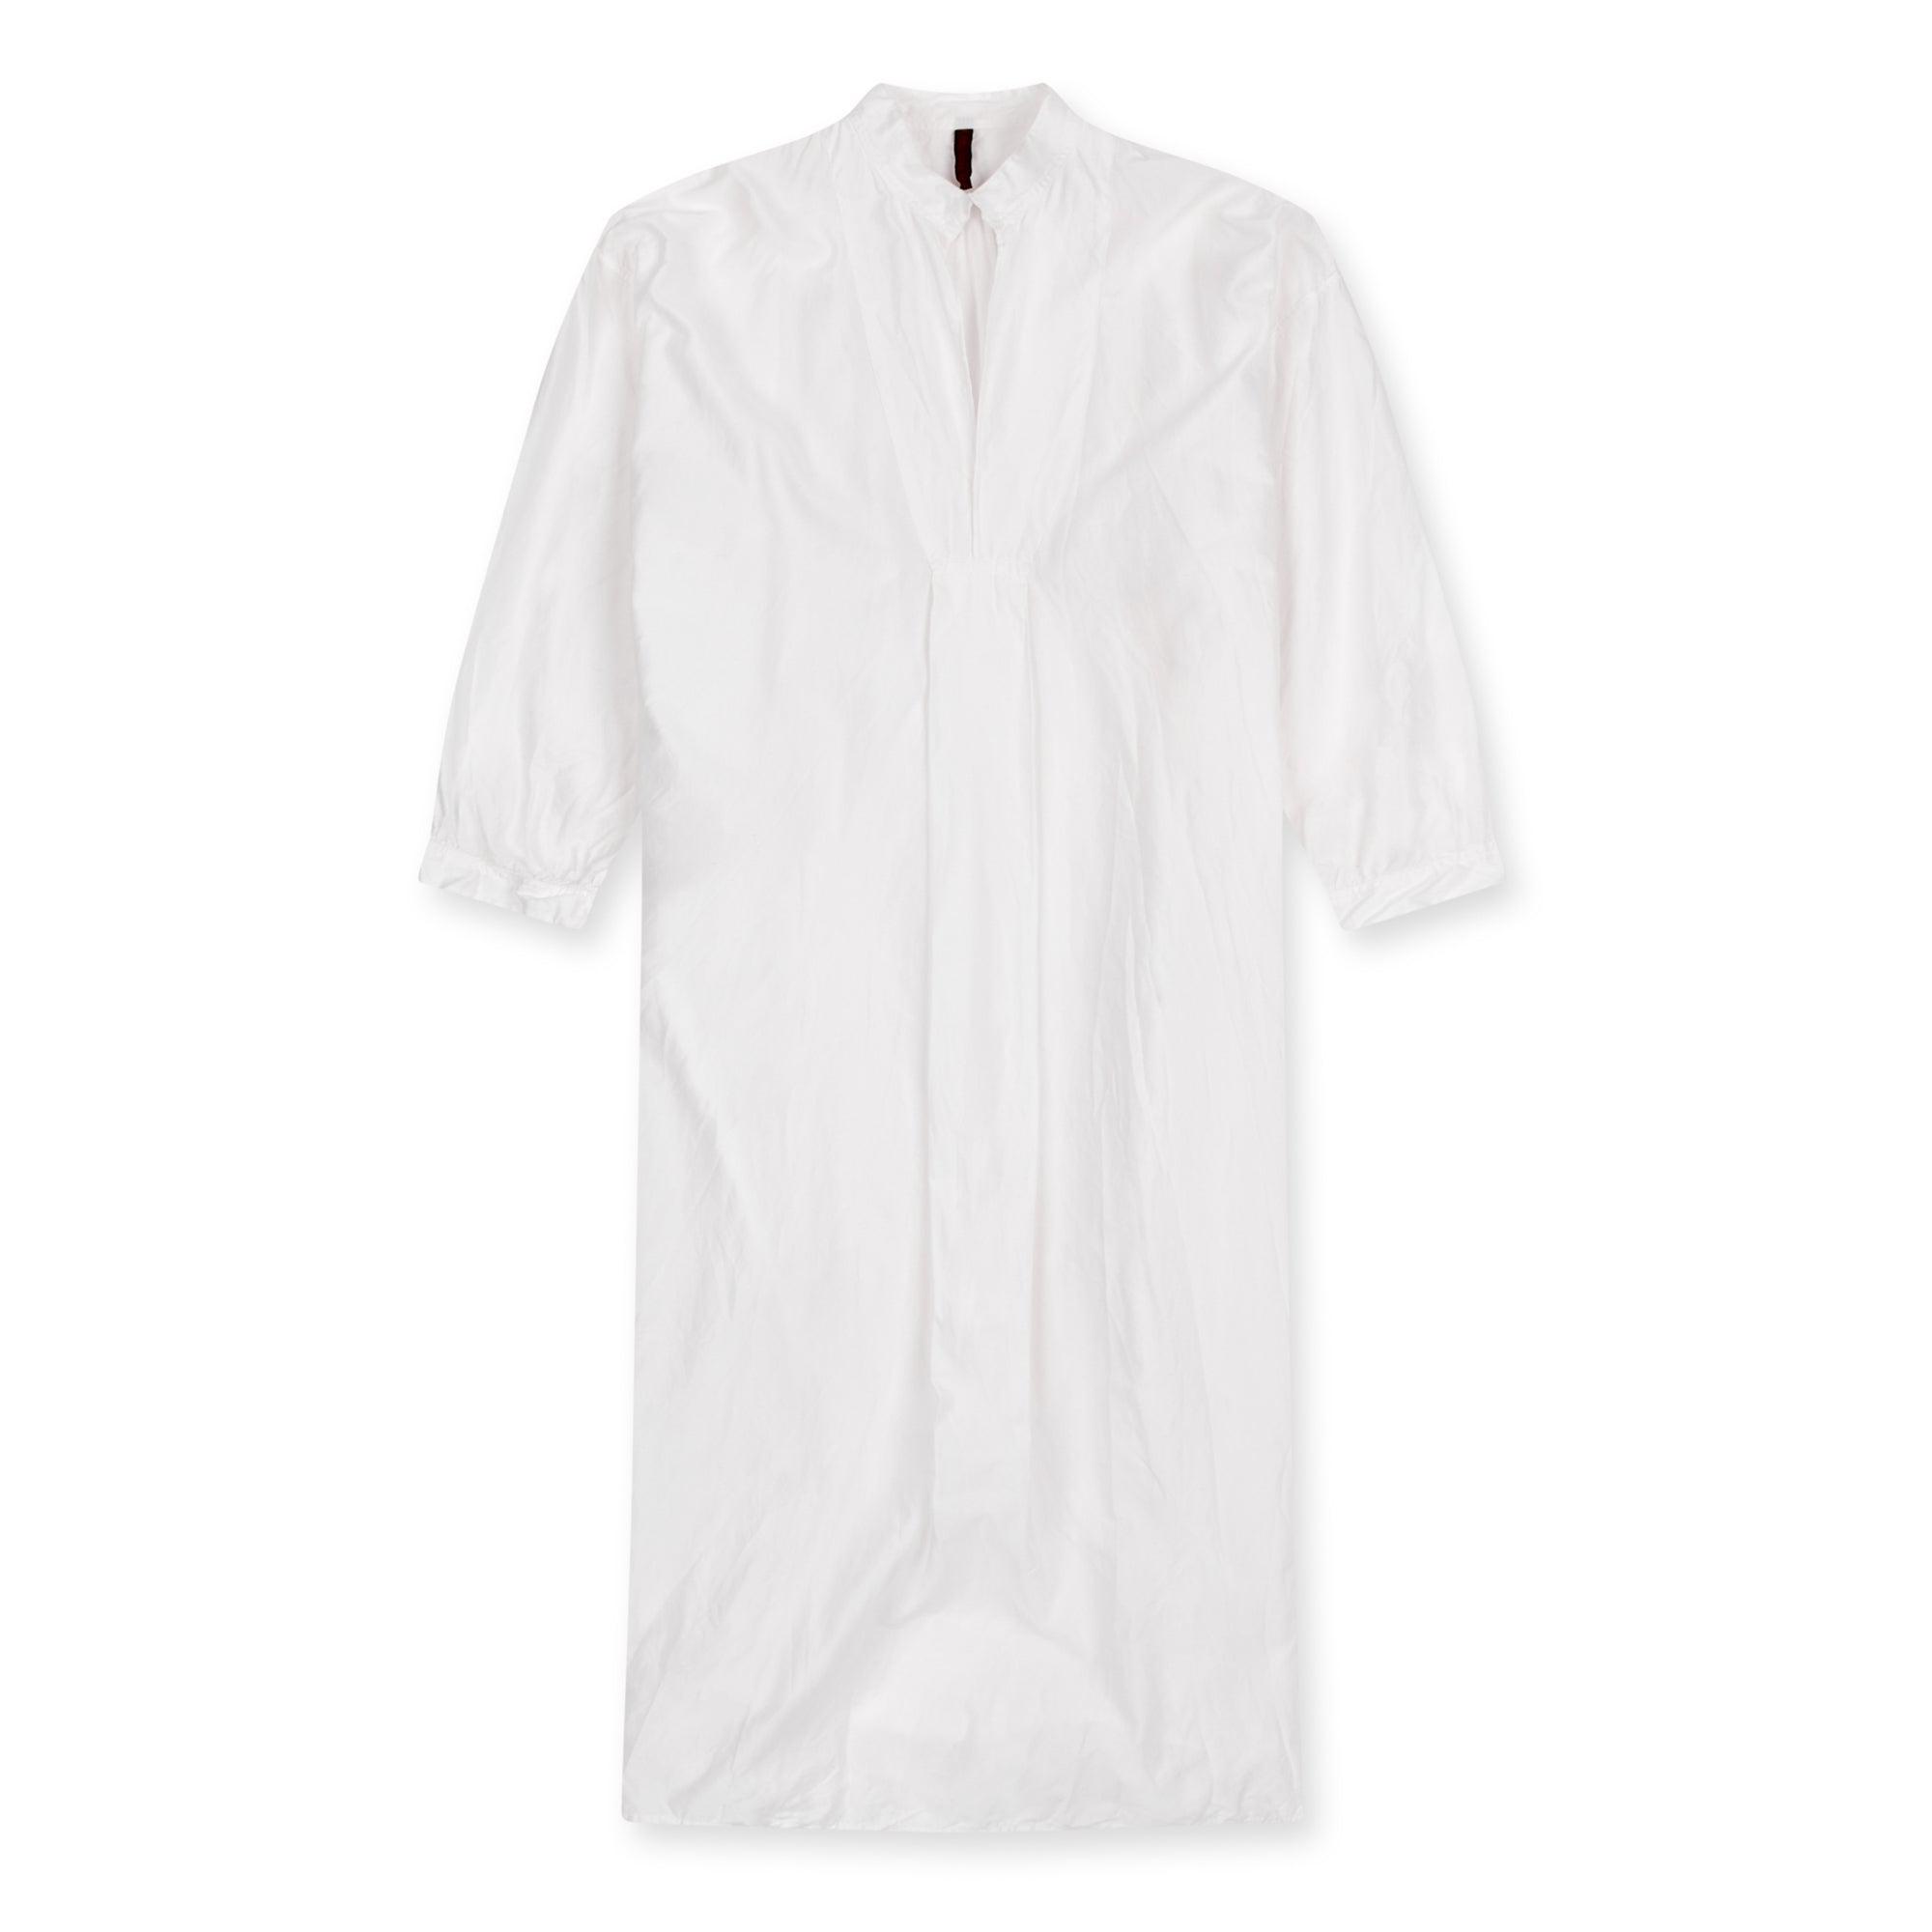 Daniela Gregis Women's Long Kora Shirt (White) by DANIELA GREGIS